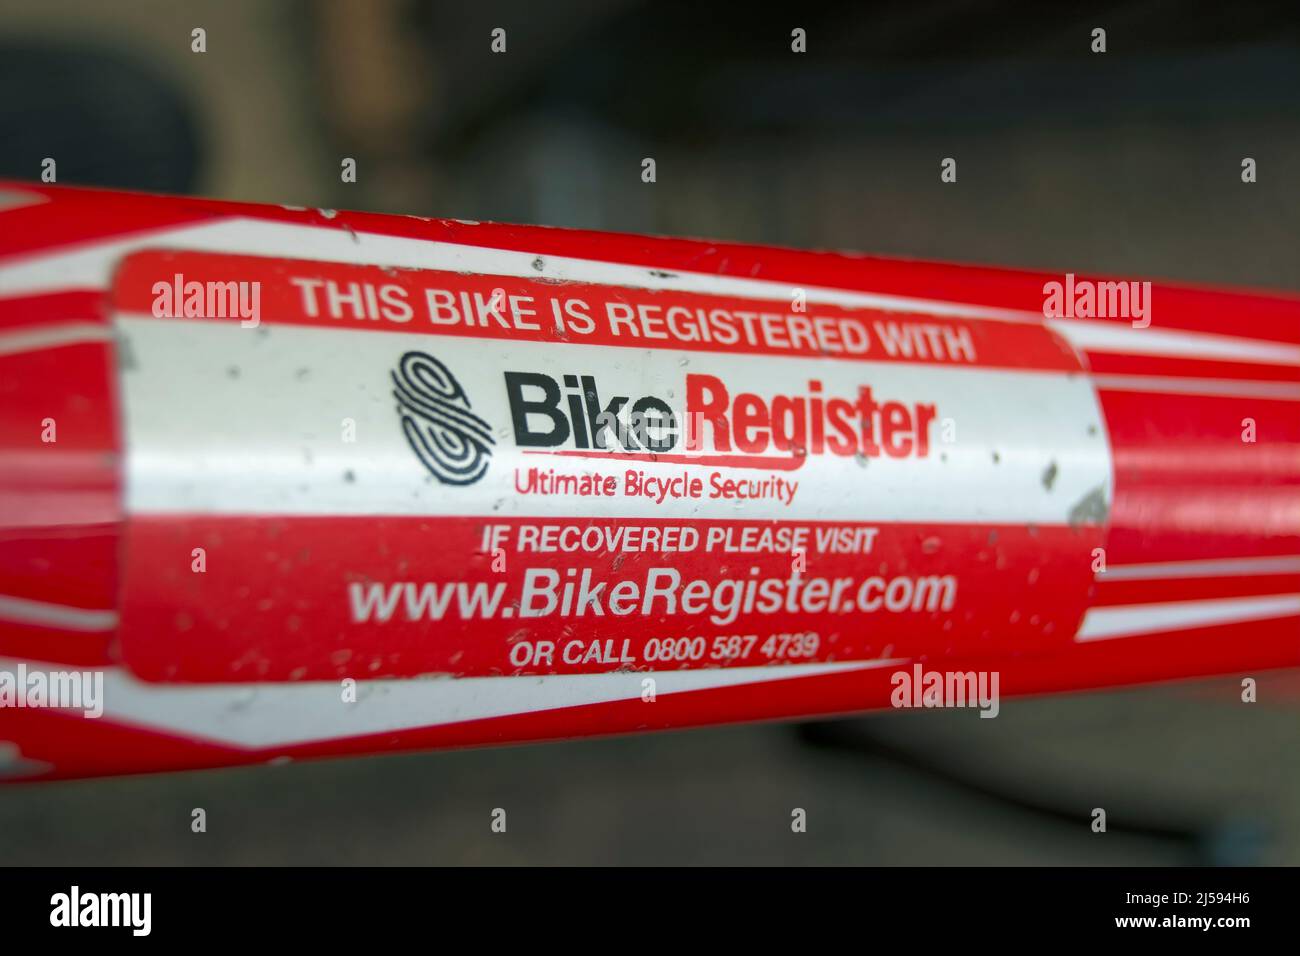 Fahrradrahmenetikett, das angibt, dass der Fahrradweg beim britischen Fahrradregister eingetragen wurde, um Fahrraddiebstahl und illegalen Weiterverkauf zu verhindern. Stockfoto